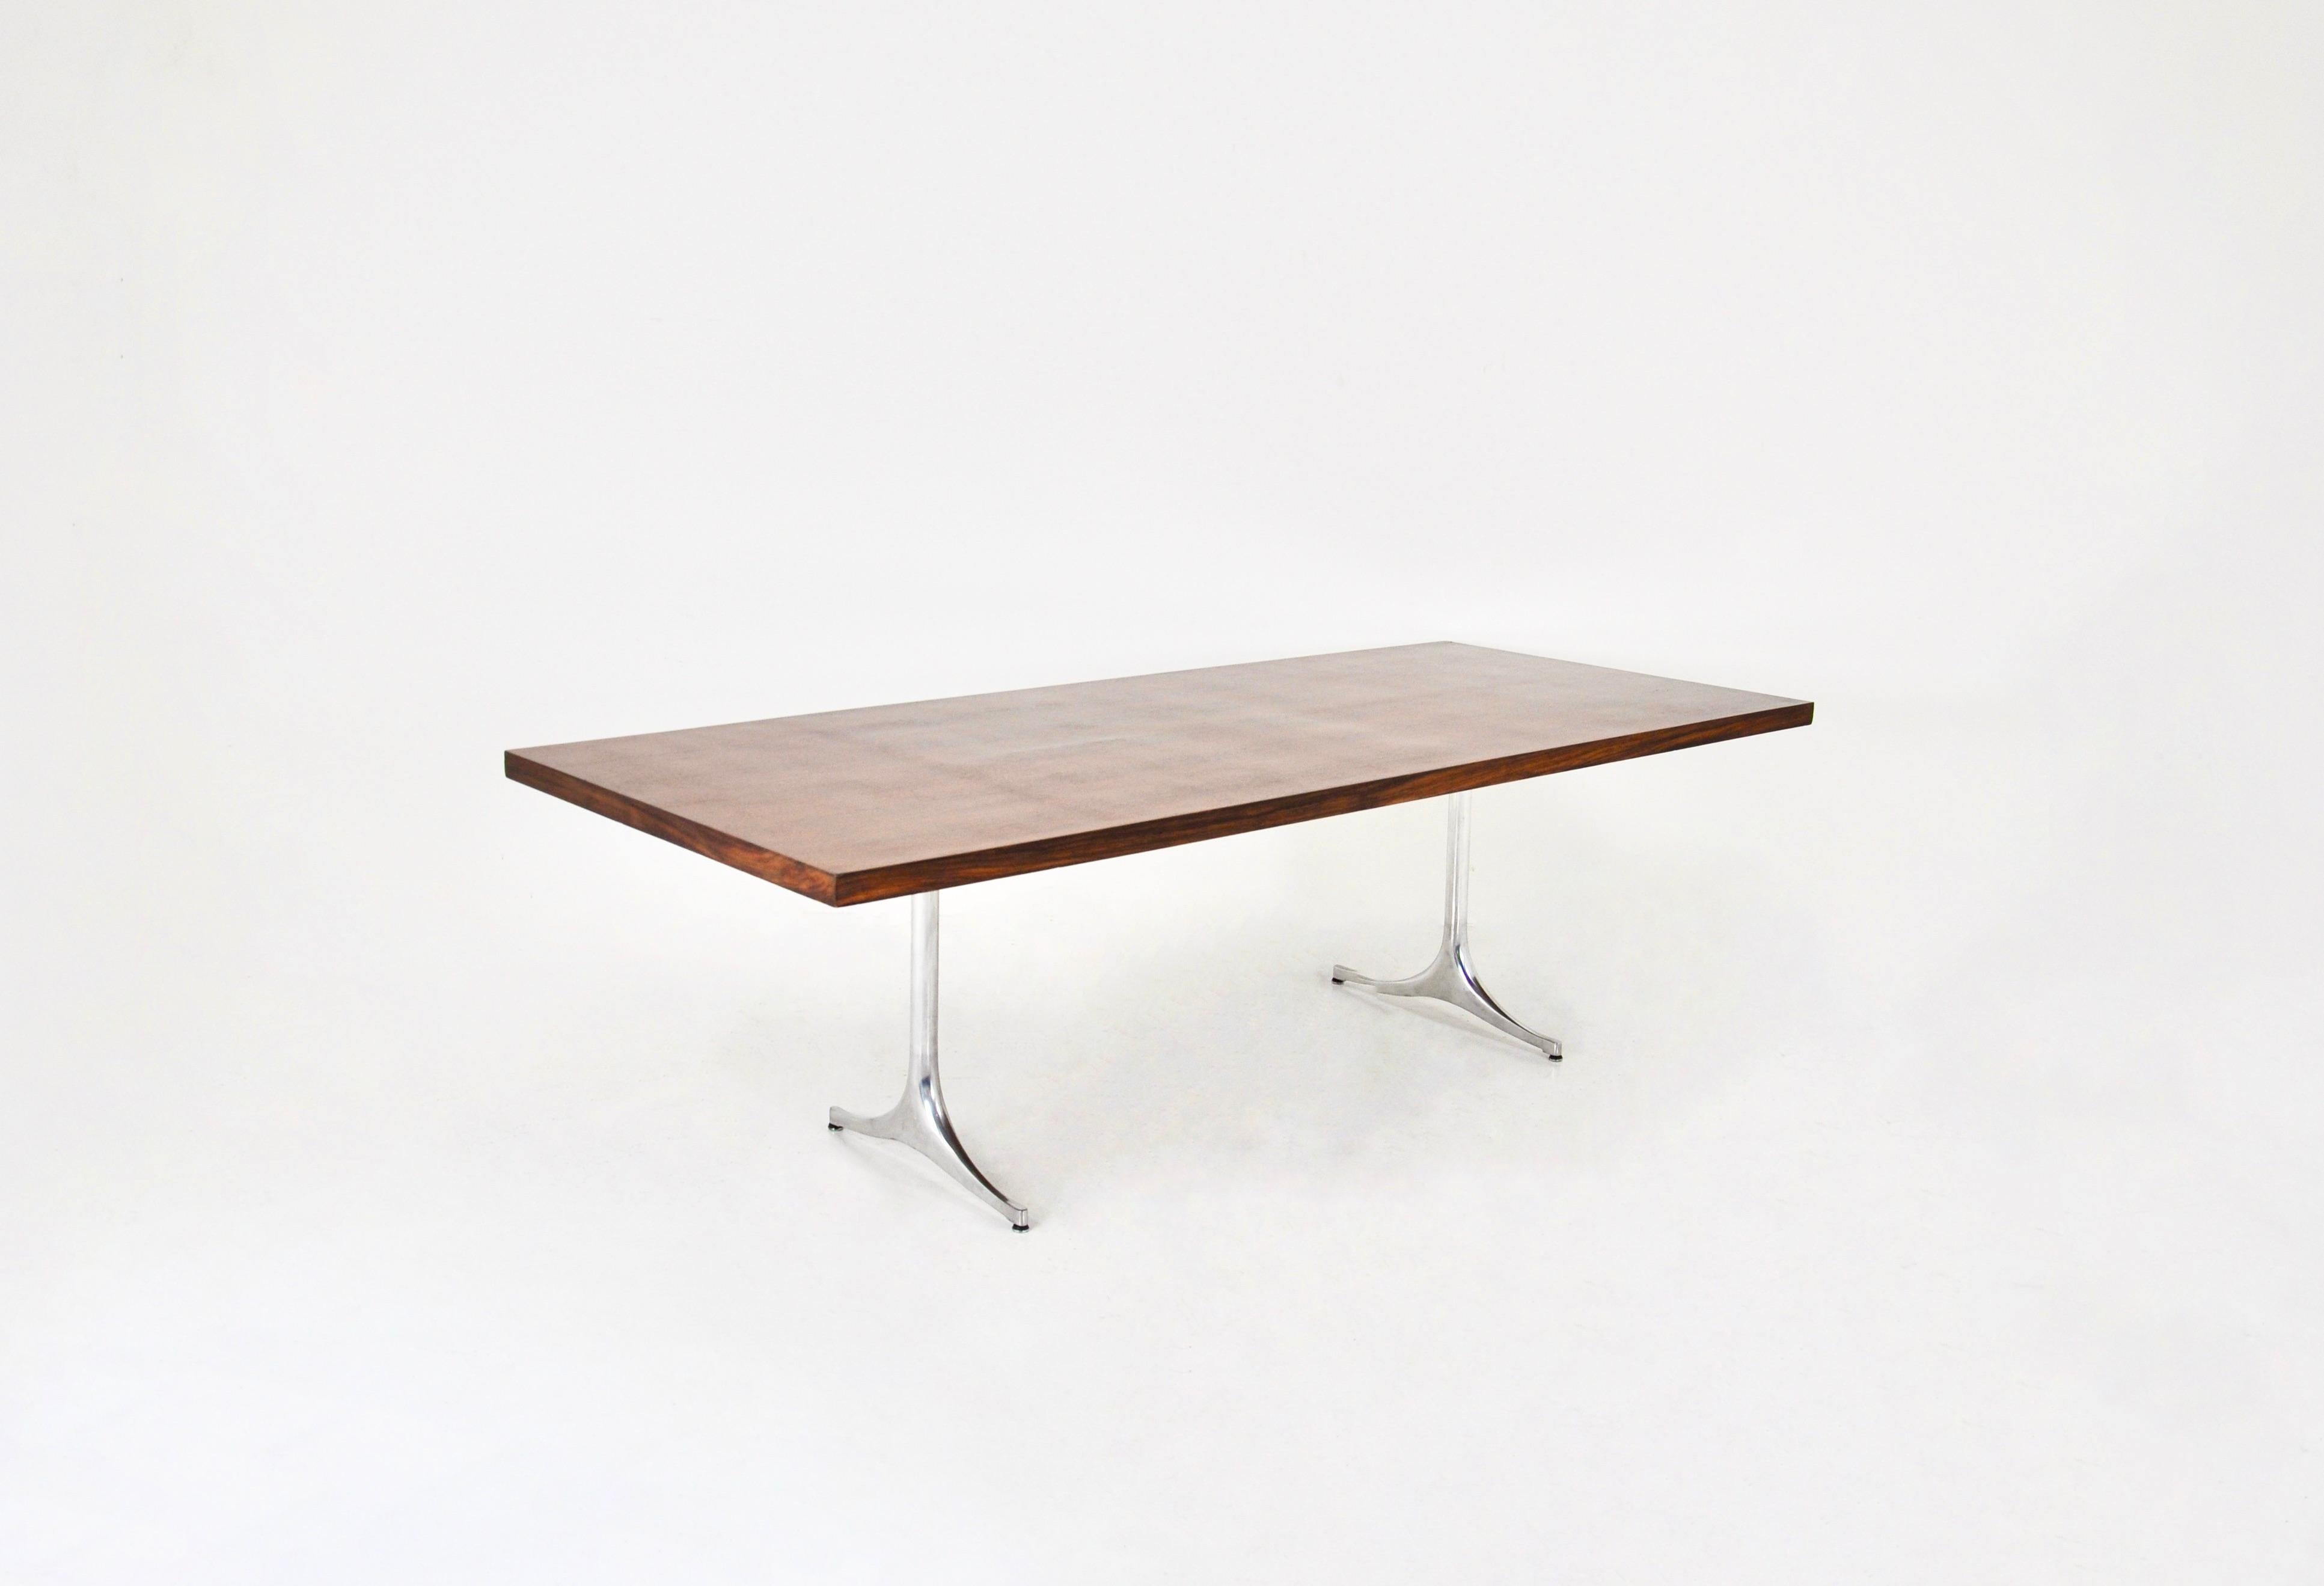 Holztisch mit Metallbeinen von George Nelson. Auf dem Bein nummeriert. Abnutzung durch die Zeit und das Alter des Tisches.
